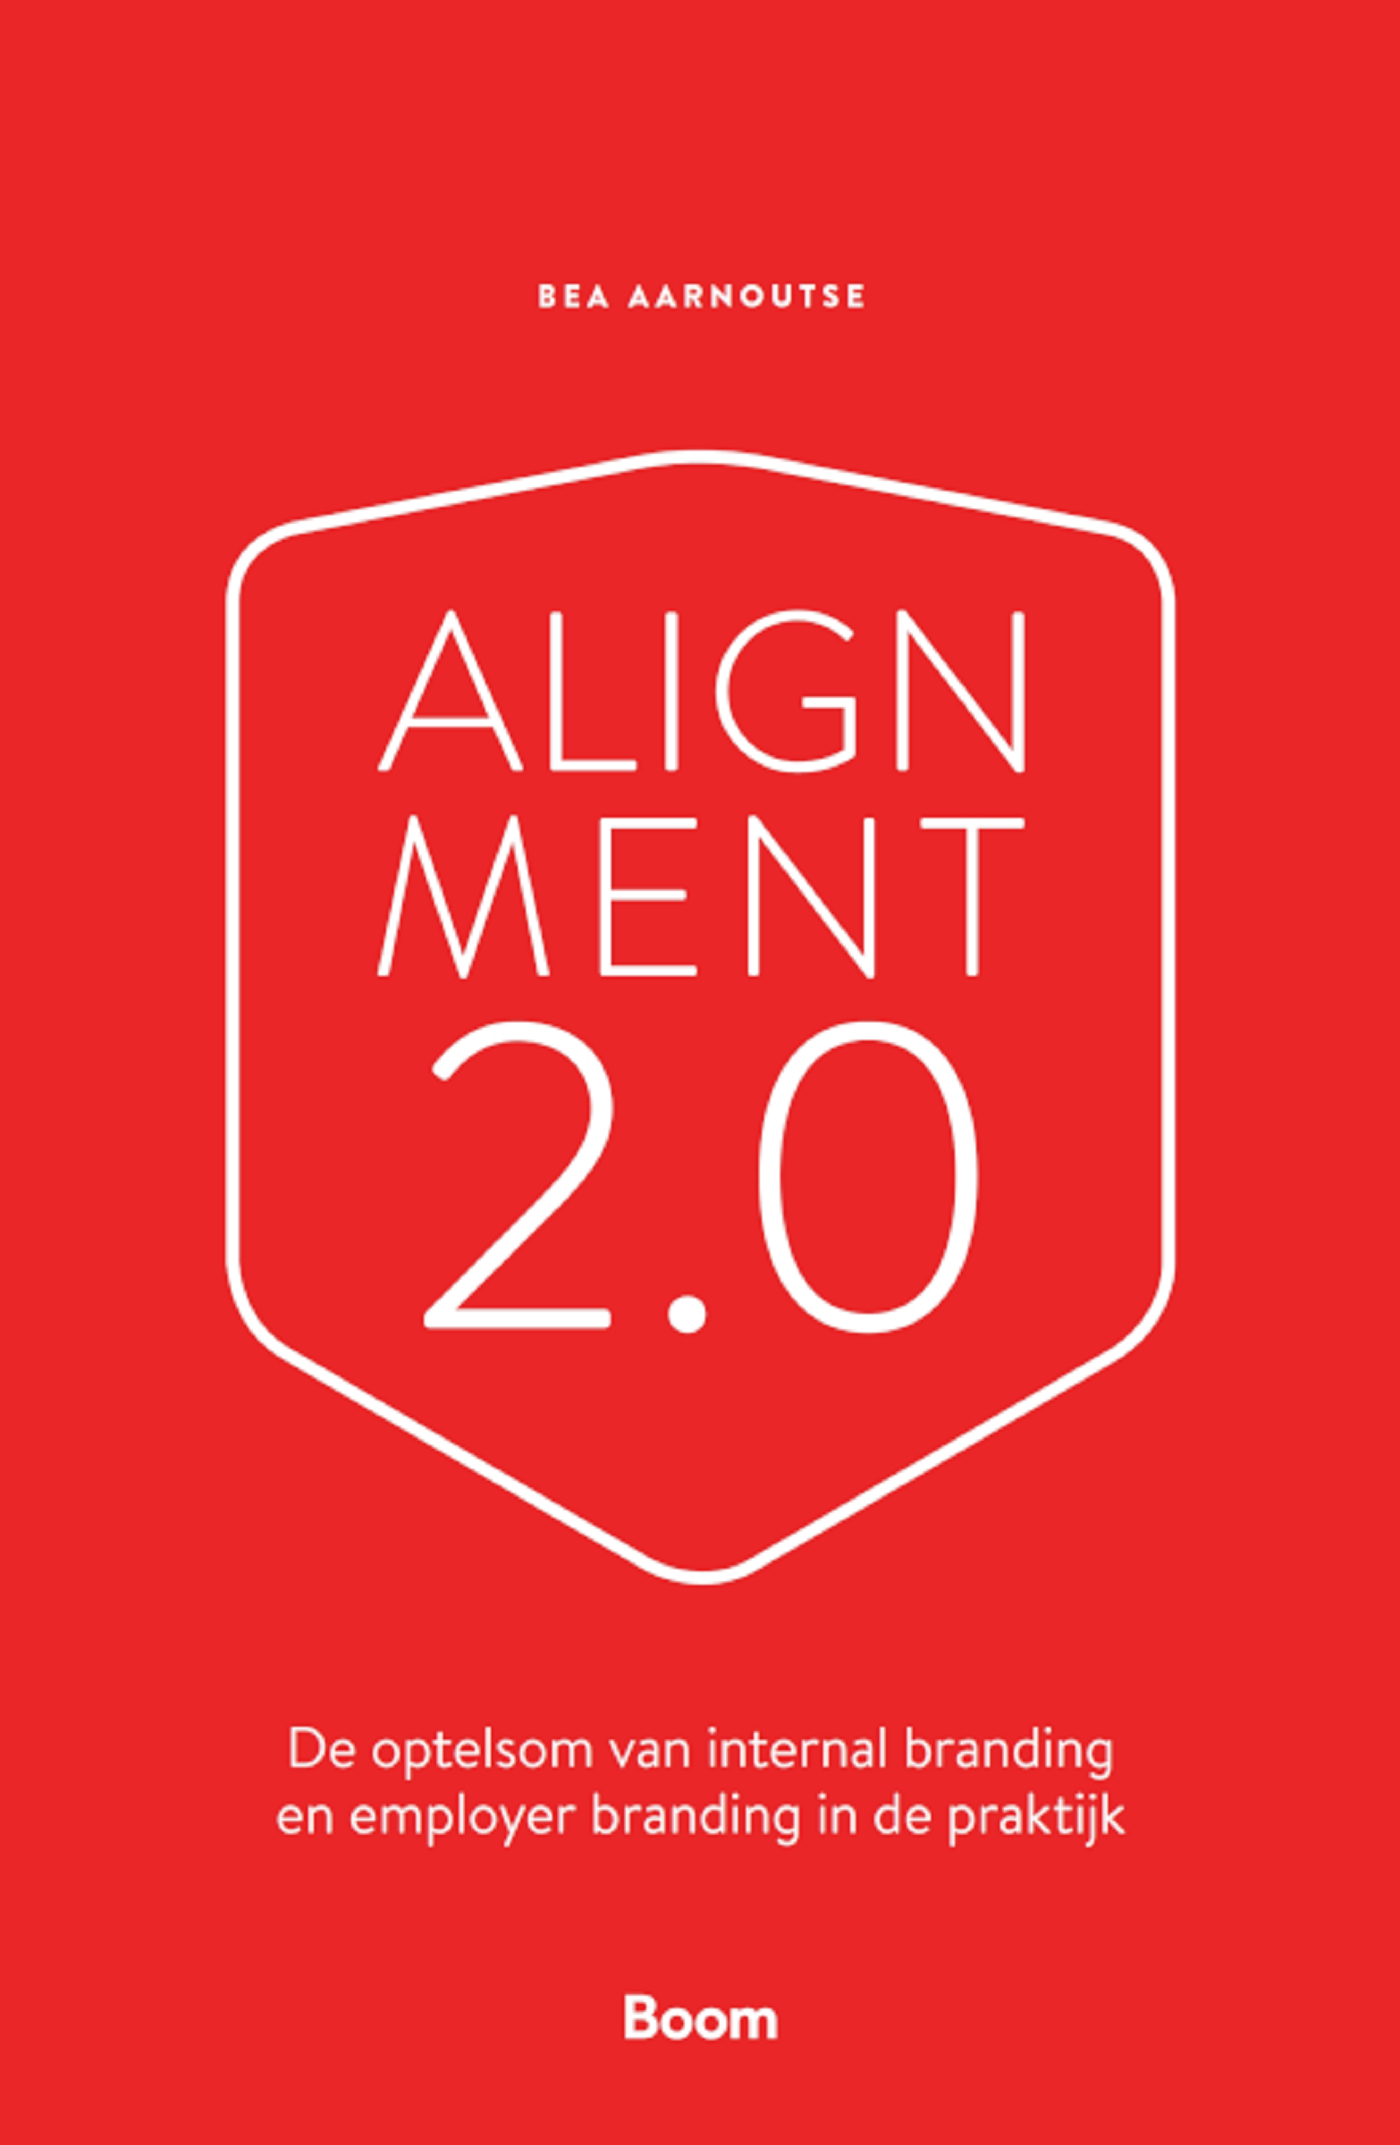 Alignment 2.0 (Ebook)